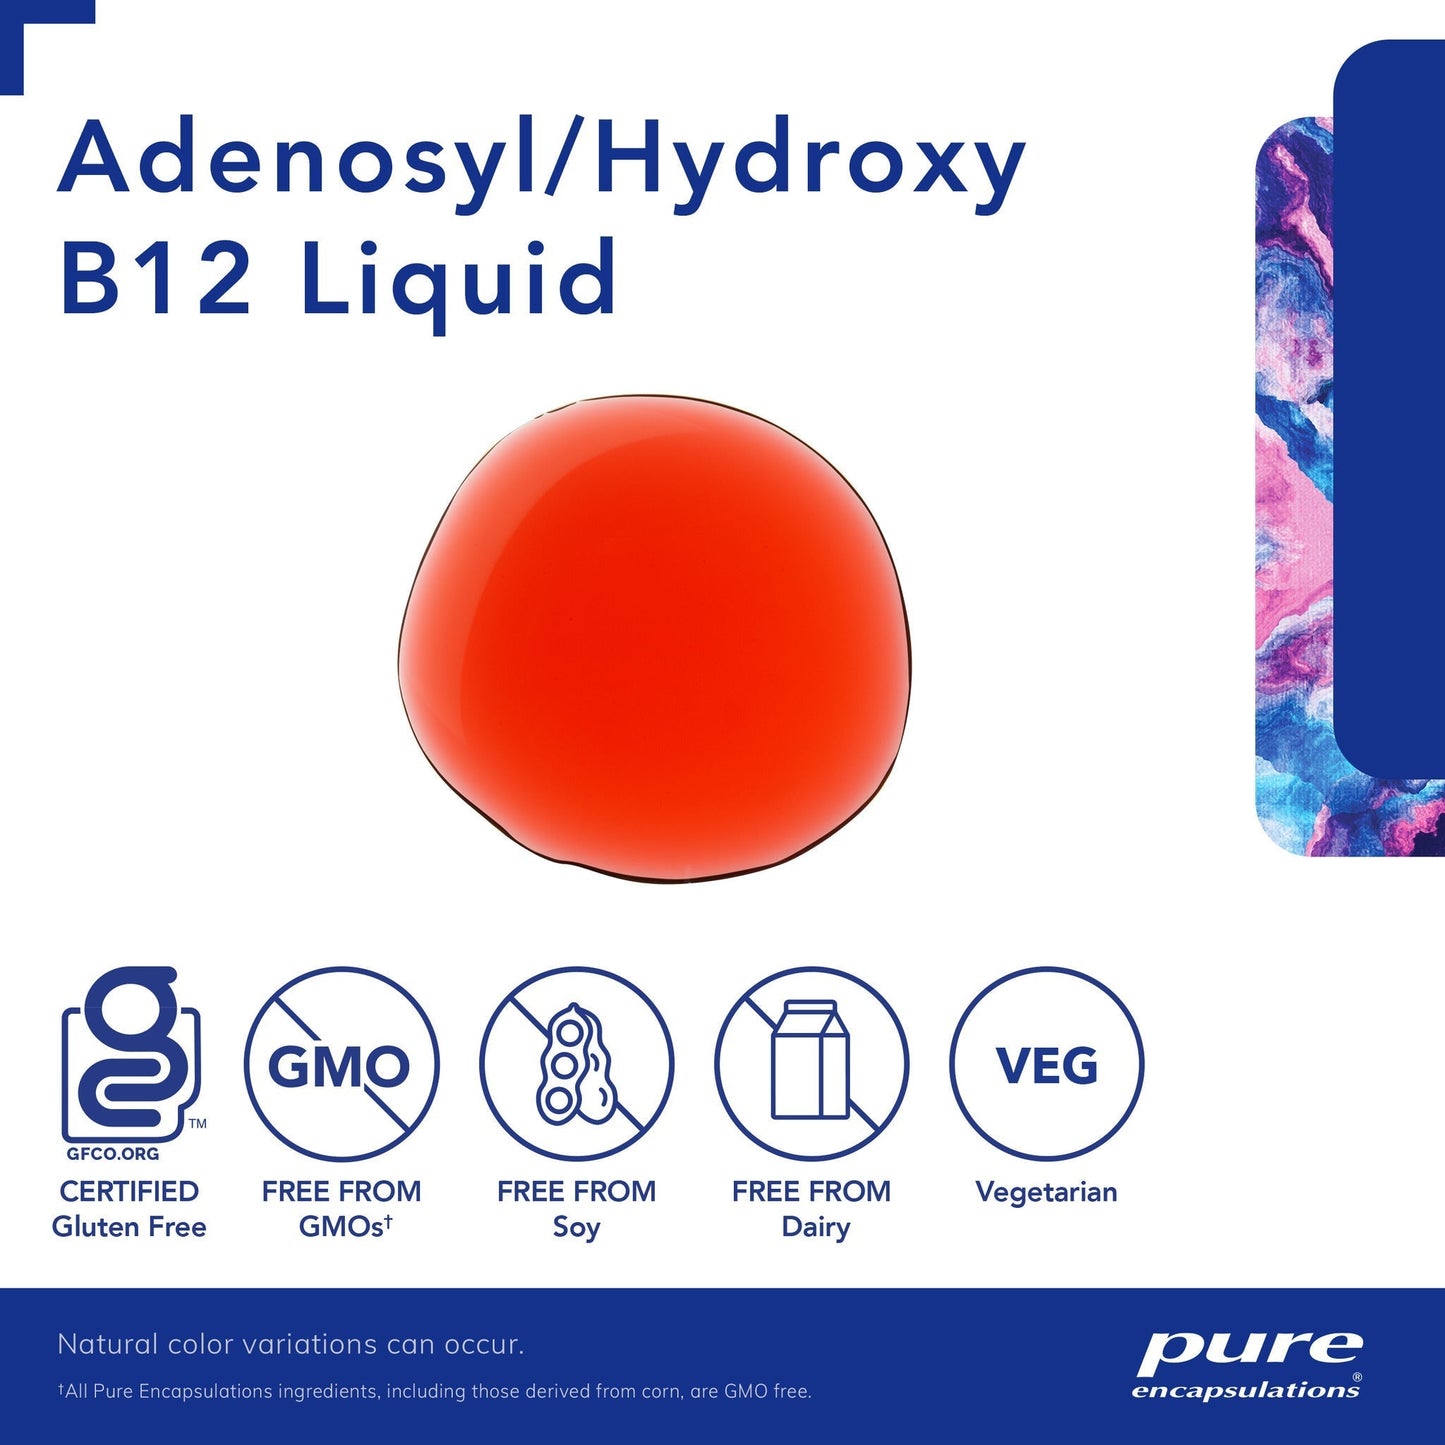 Adenosyl/Hydroxy B12 Liquid